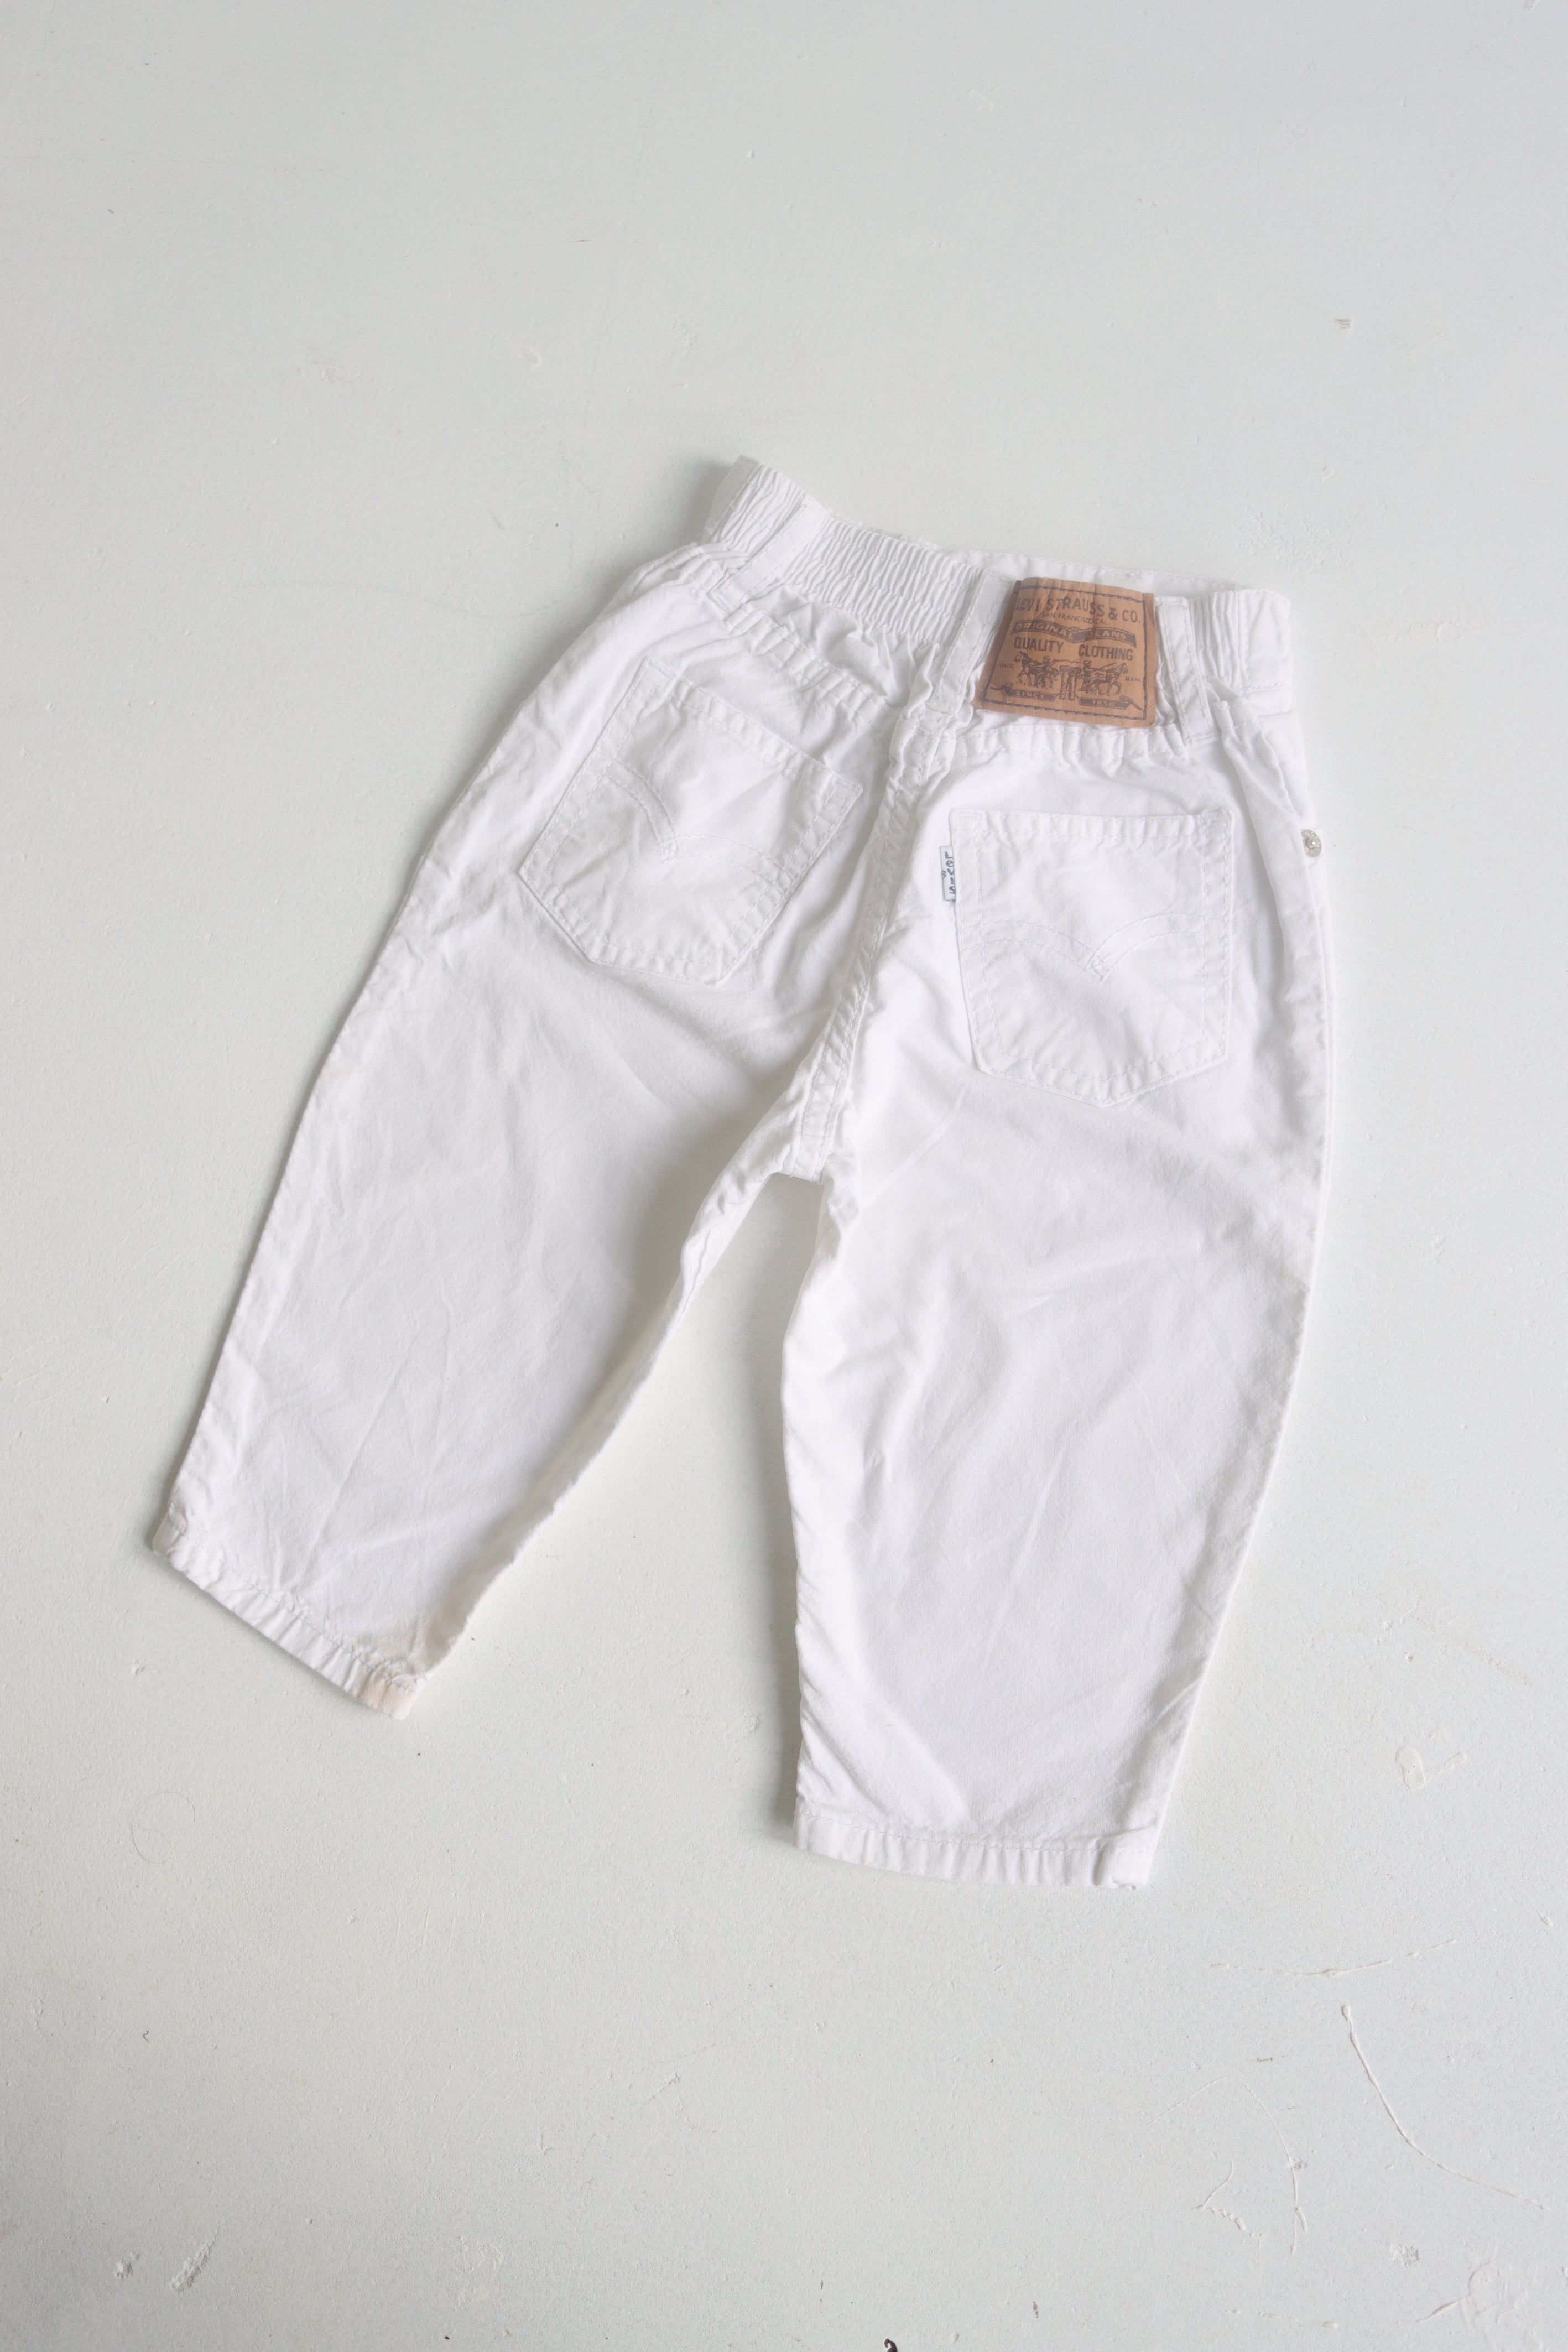 Vintage white canvas Levi's pants  - Size 6-12 months